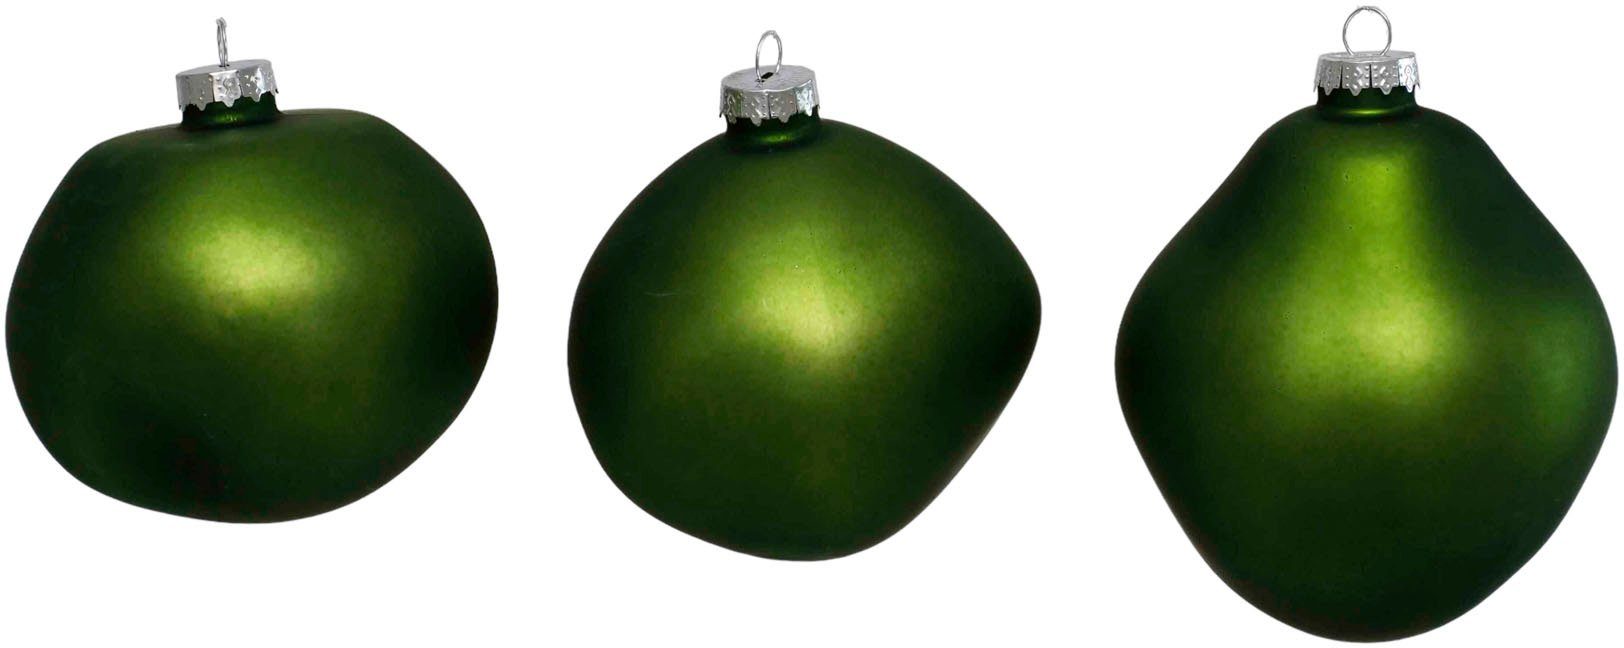 Leonique Weihnachtsbaumkugel Birdelle matt, Weihnachtsdeko, Christbaumschmuck, Christbaumkugeln (3 St), Baumkugeln in organischer Form, Ø 10 cm, organische Kugeln aus Glas grün matt